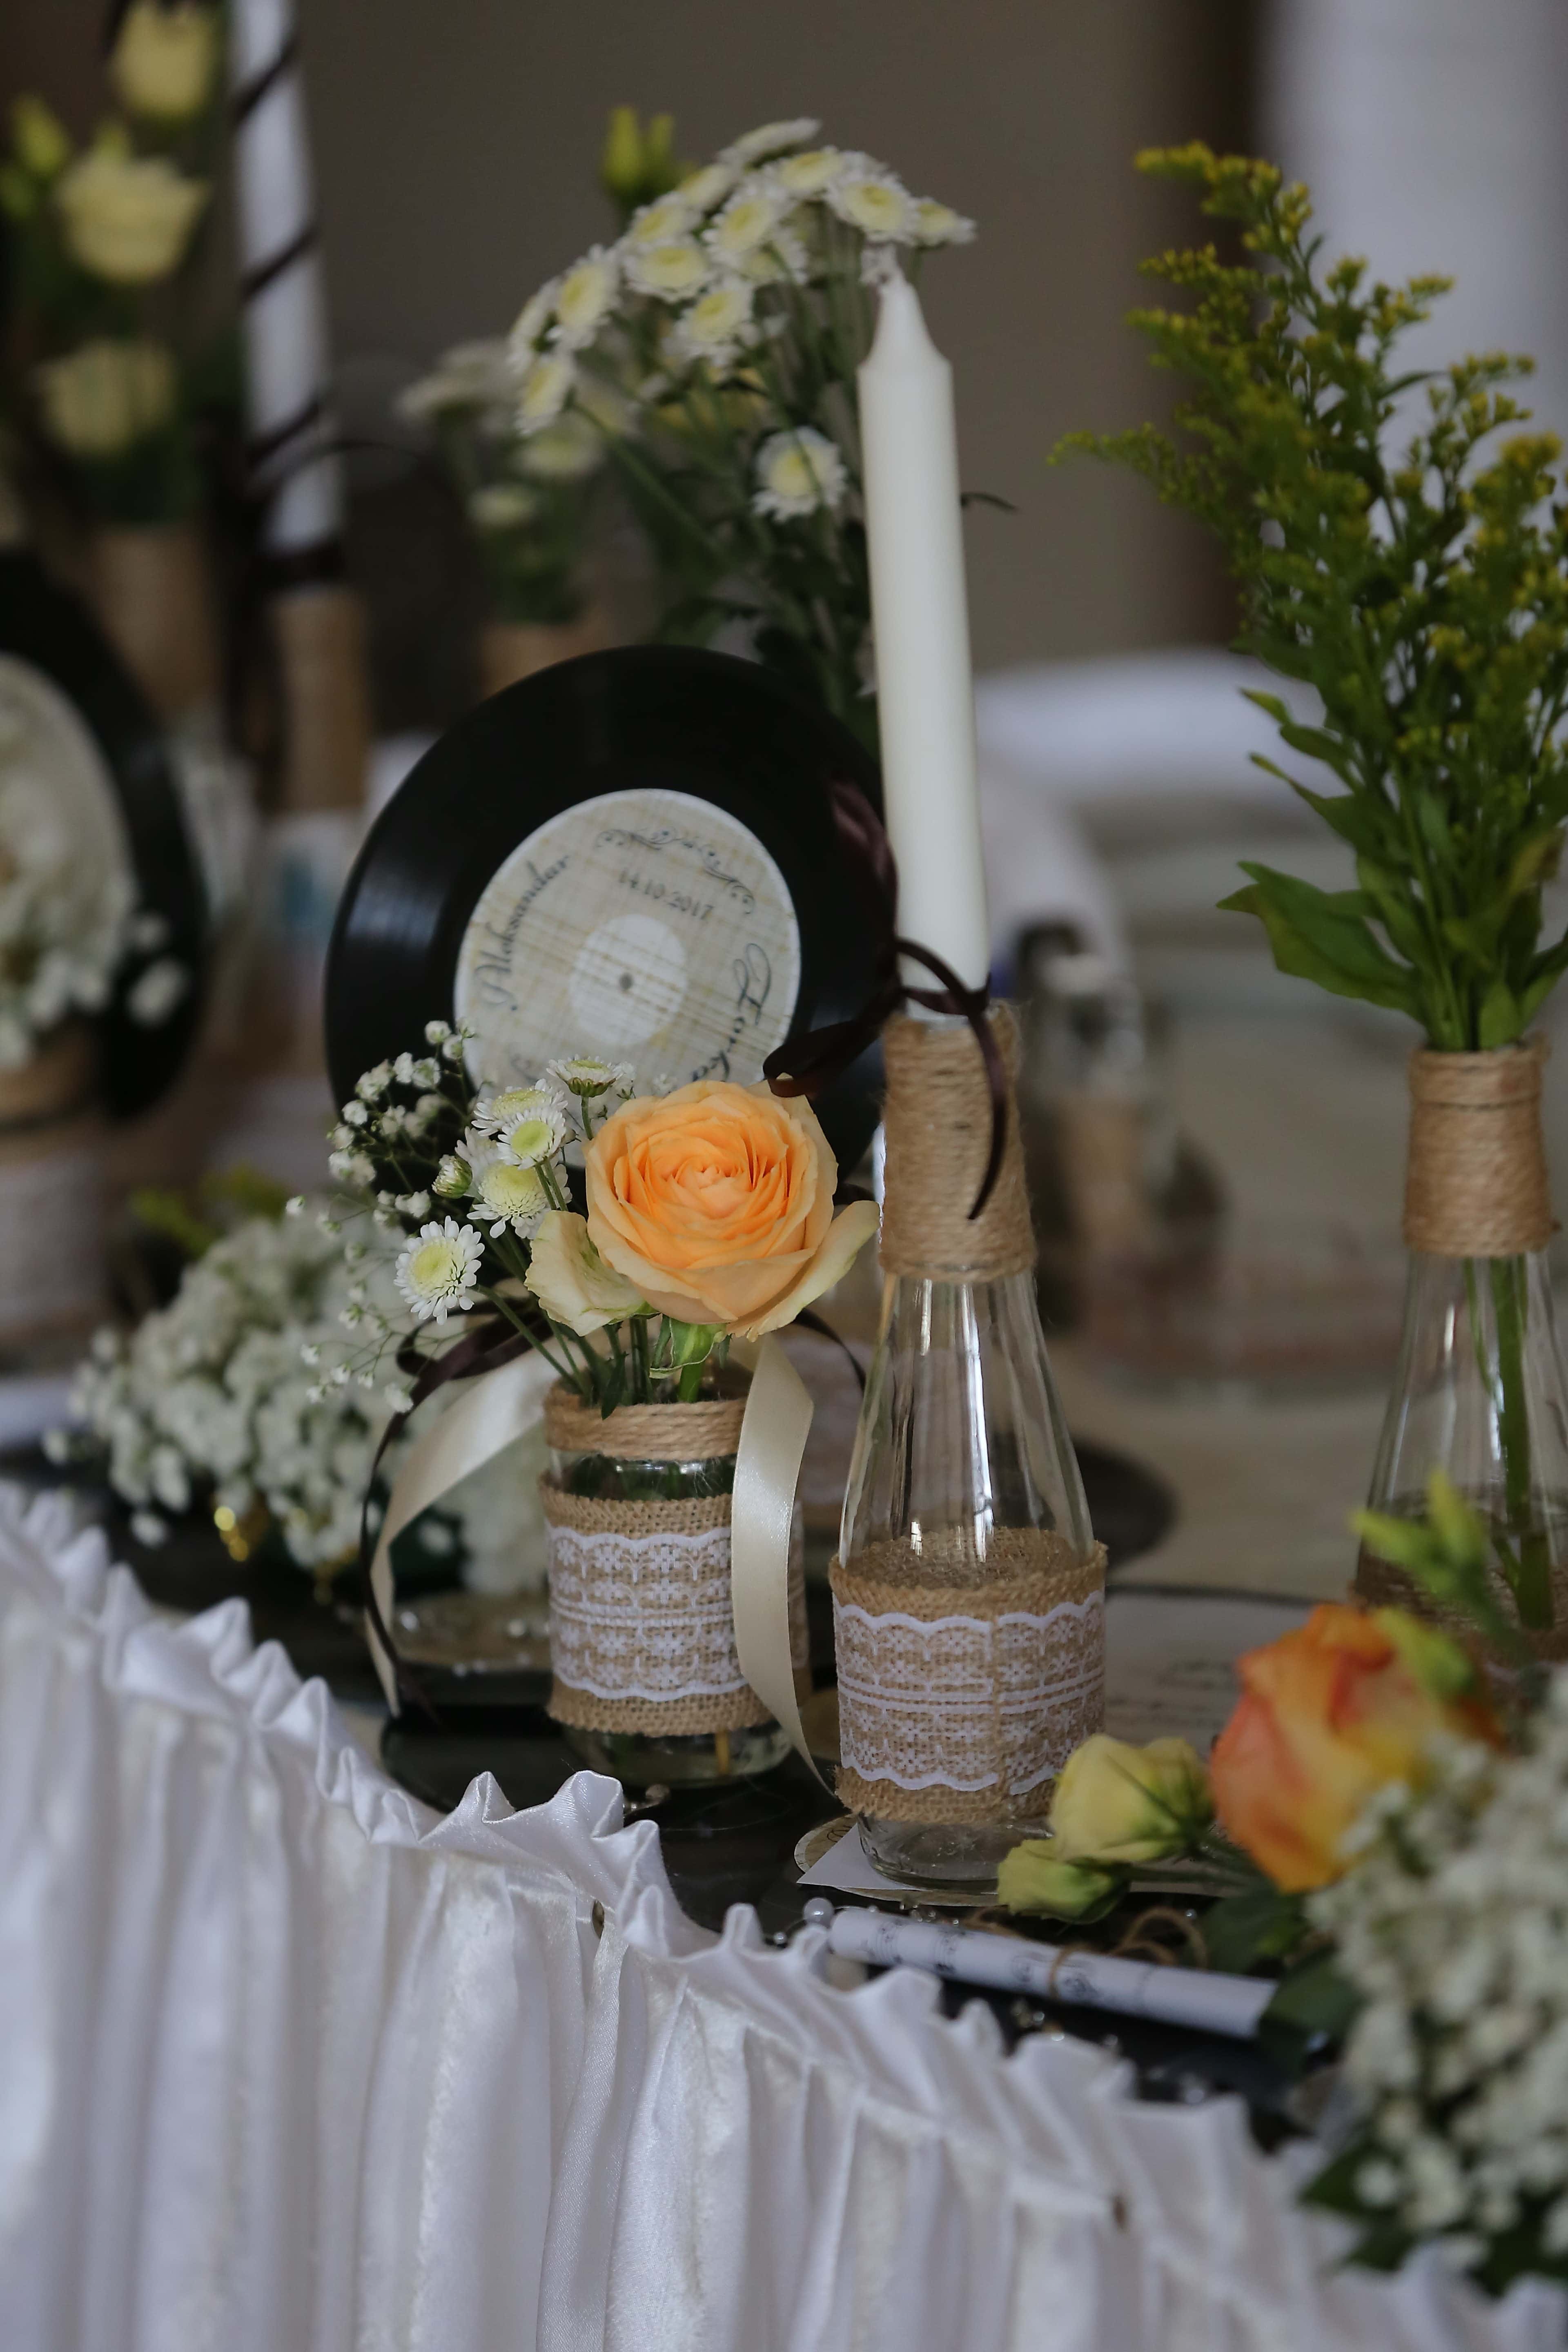 フリー写真画像 装飾的です 配置 ビニールレコード 懐かしさ キャンドル ボトル ローソク足 結婚式 花束 花